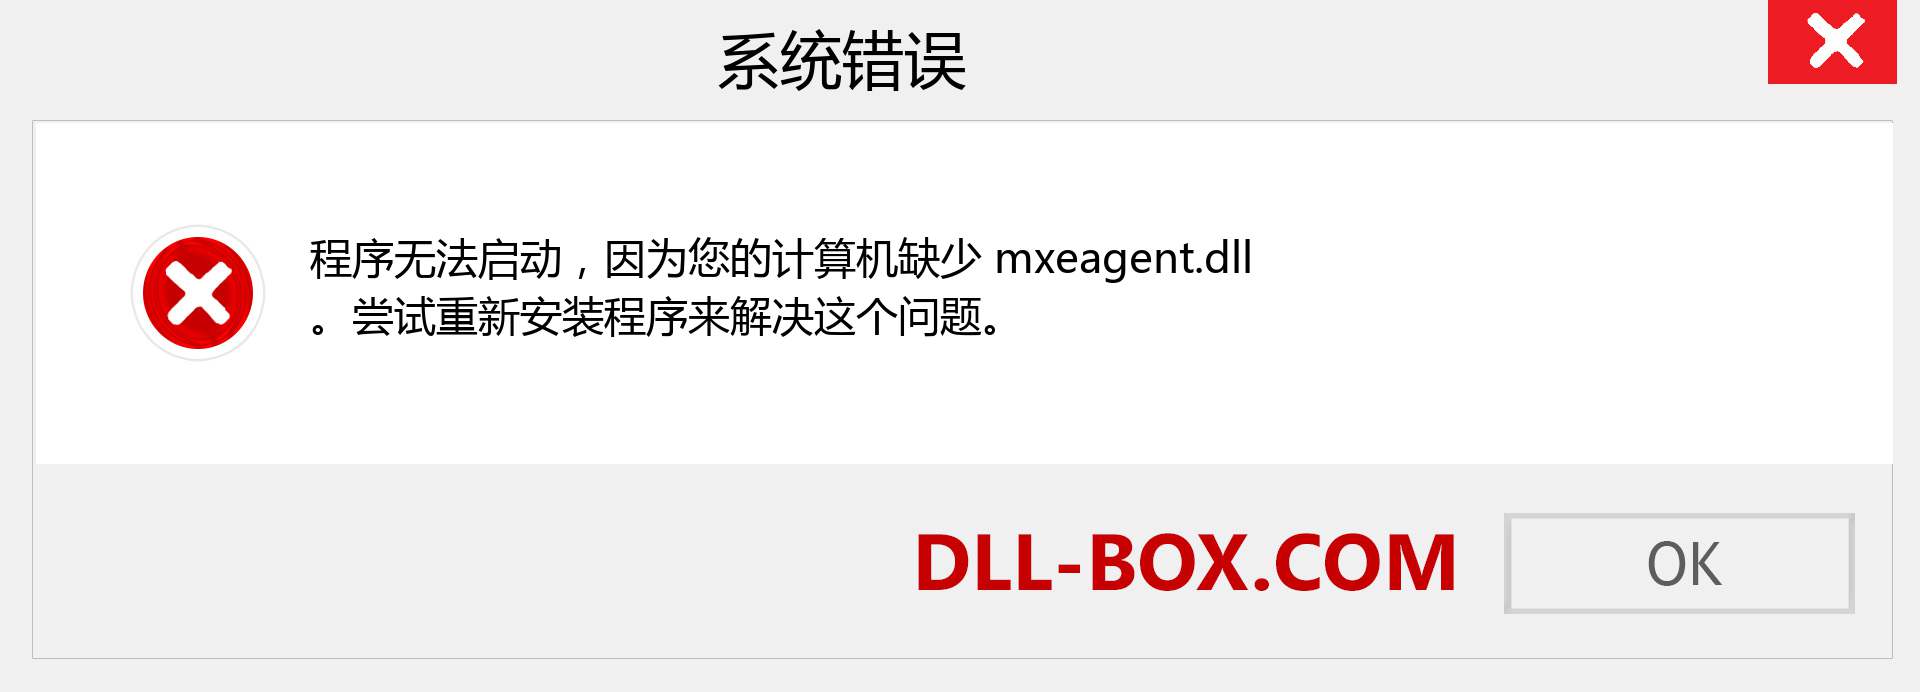 mxeagent.dll 文件丢失？。 适用于 Windows 7、8、10 的下载 - 修复 Windows、照片、图像上的 mxeagent dll 丢失错误